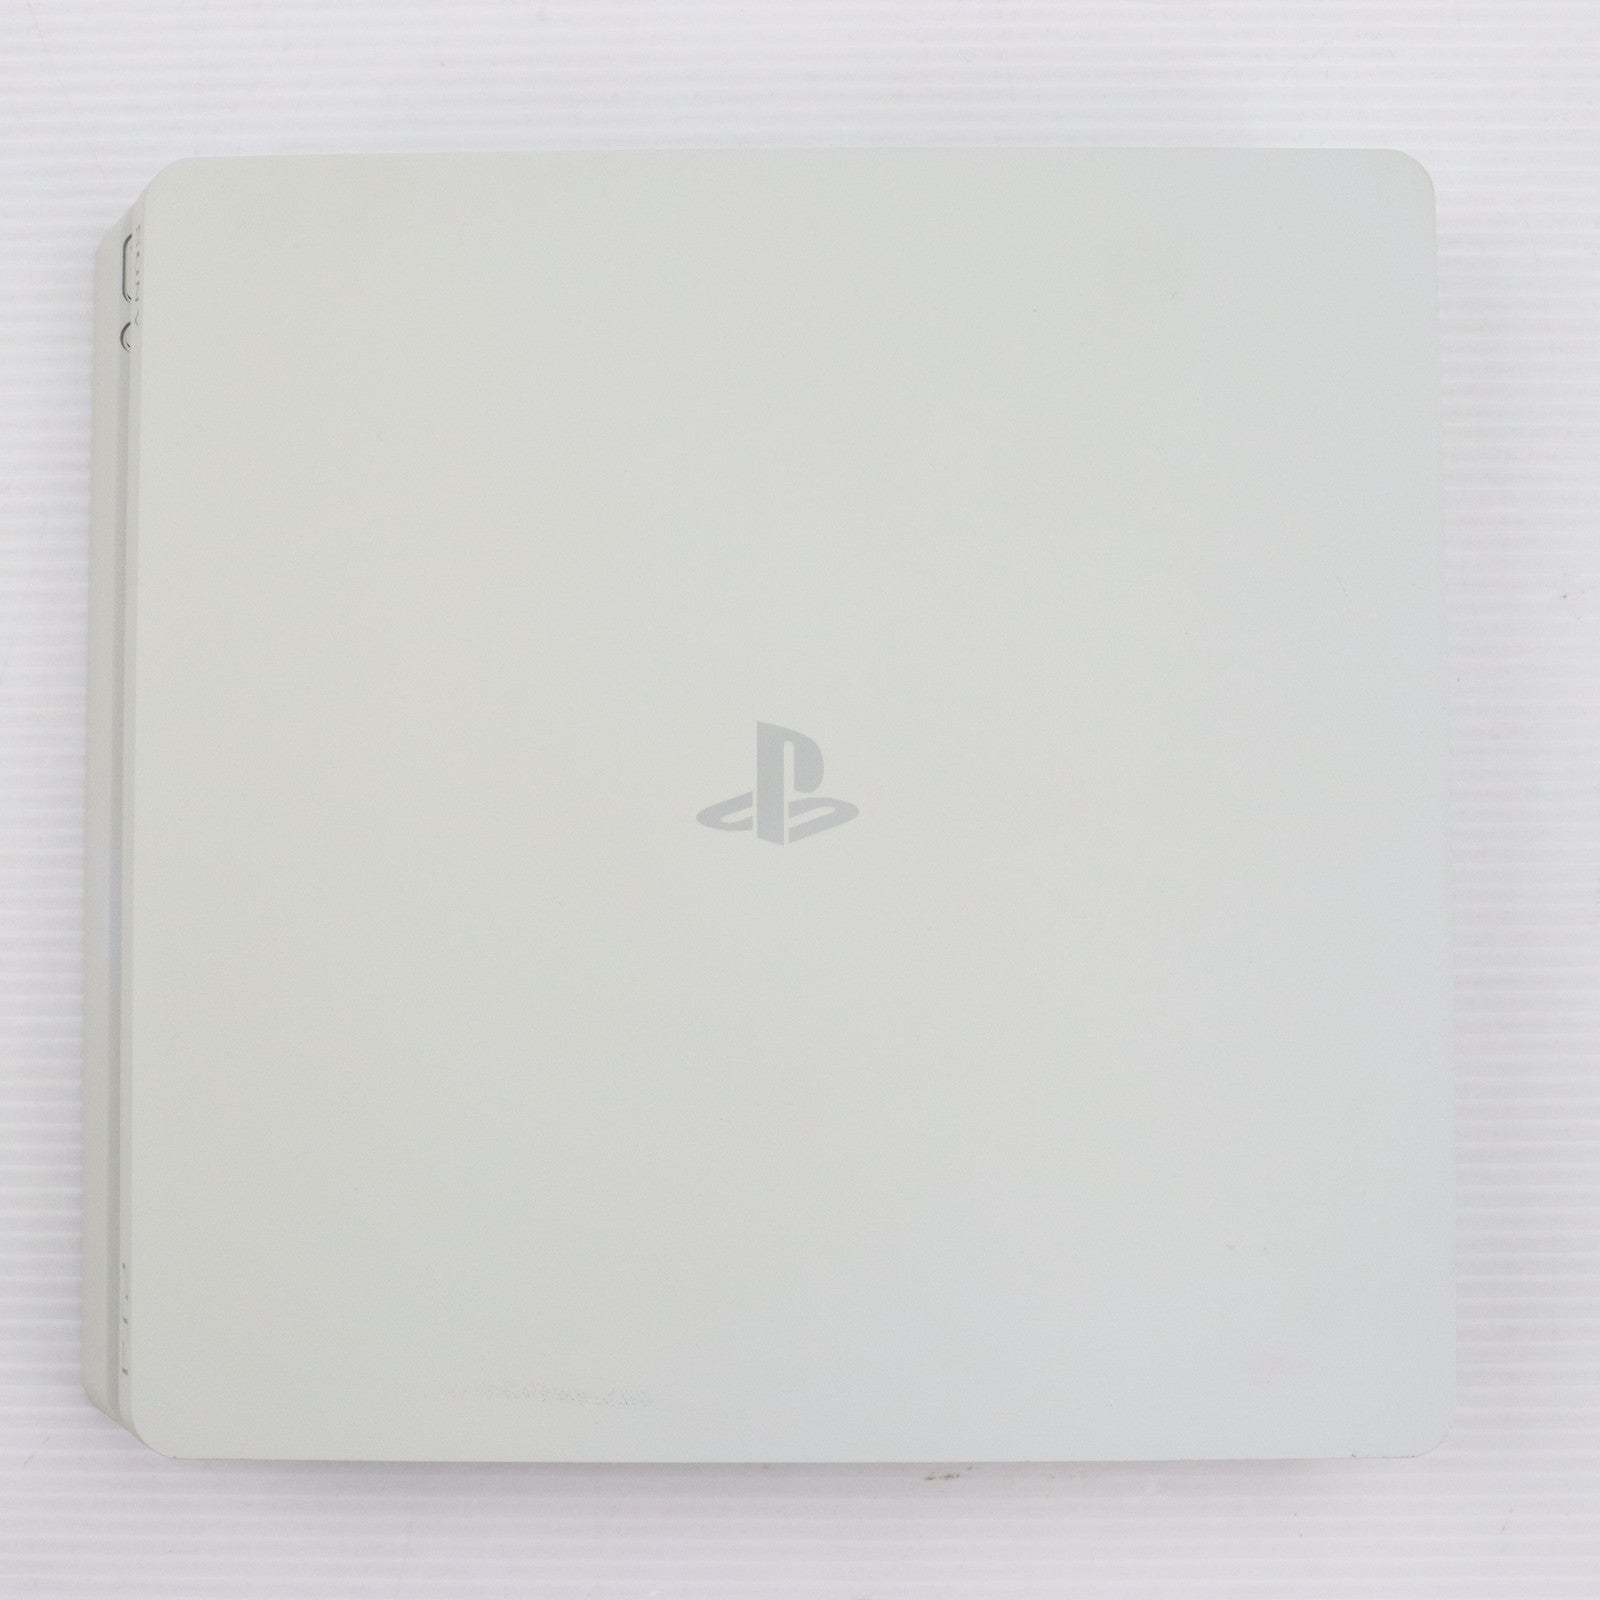 【中古即納】[本体][PS4]プレイステーション4 PlayStation4 グレイシャー・ホワイト 500GB(CUH-2000AB02)(20170223)